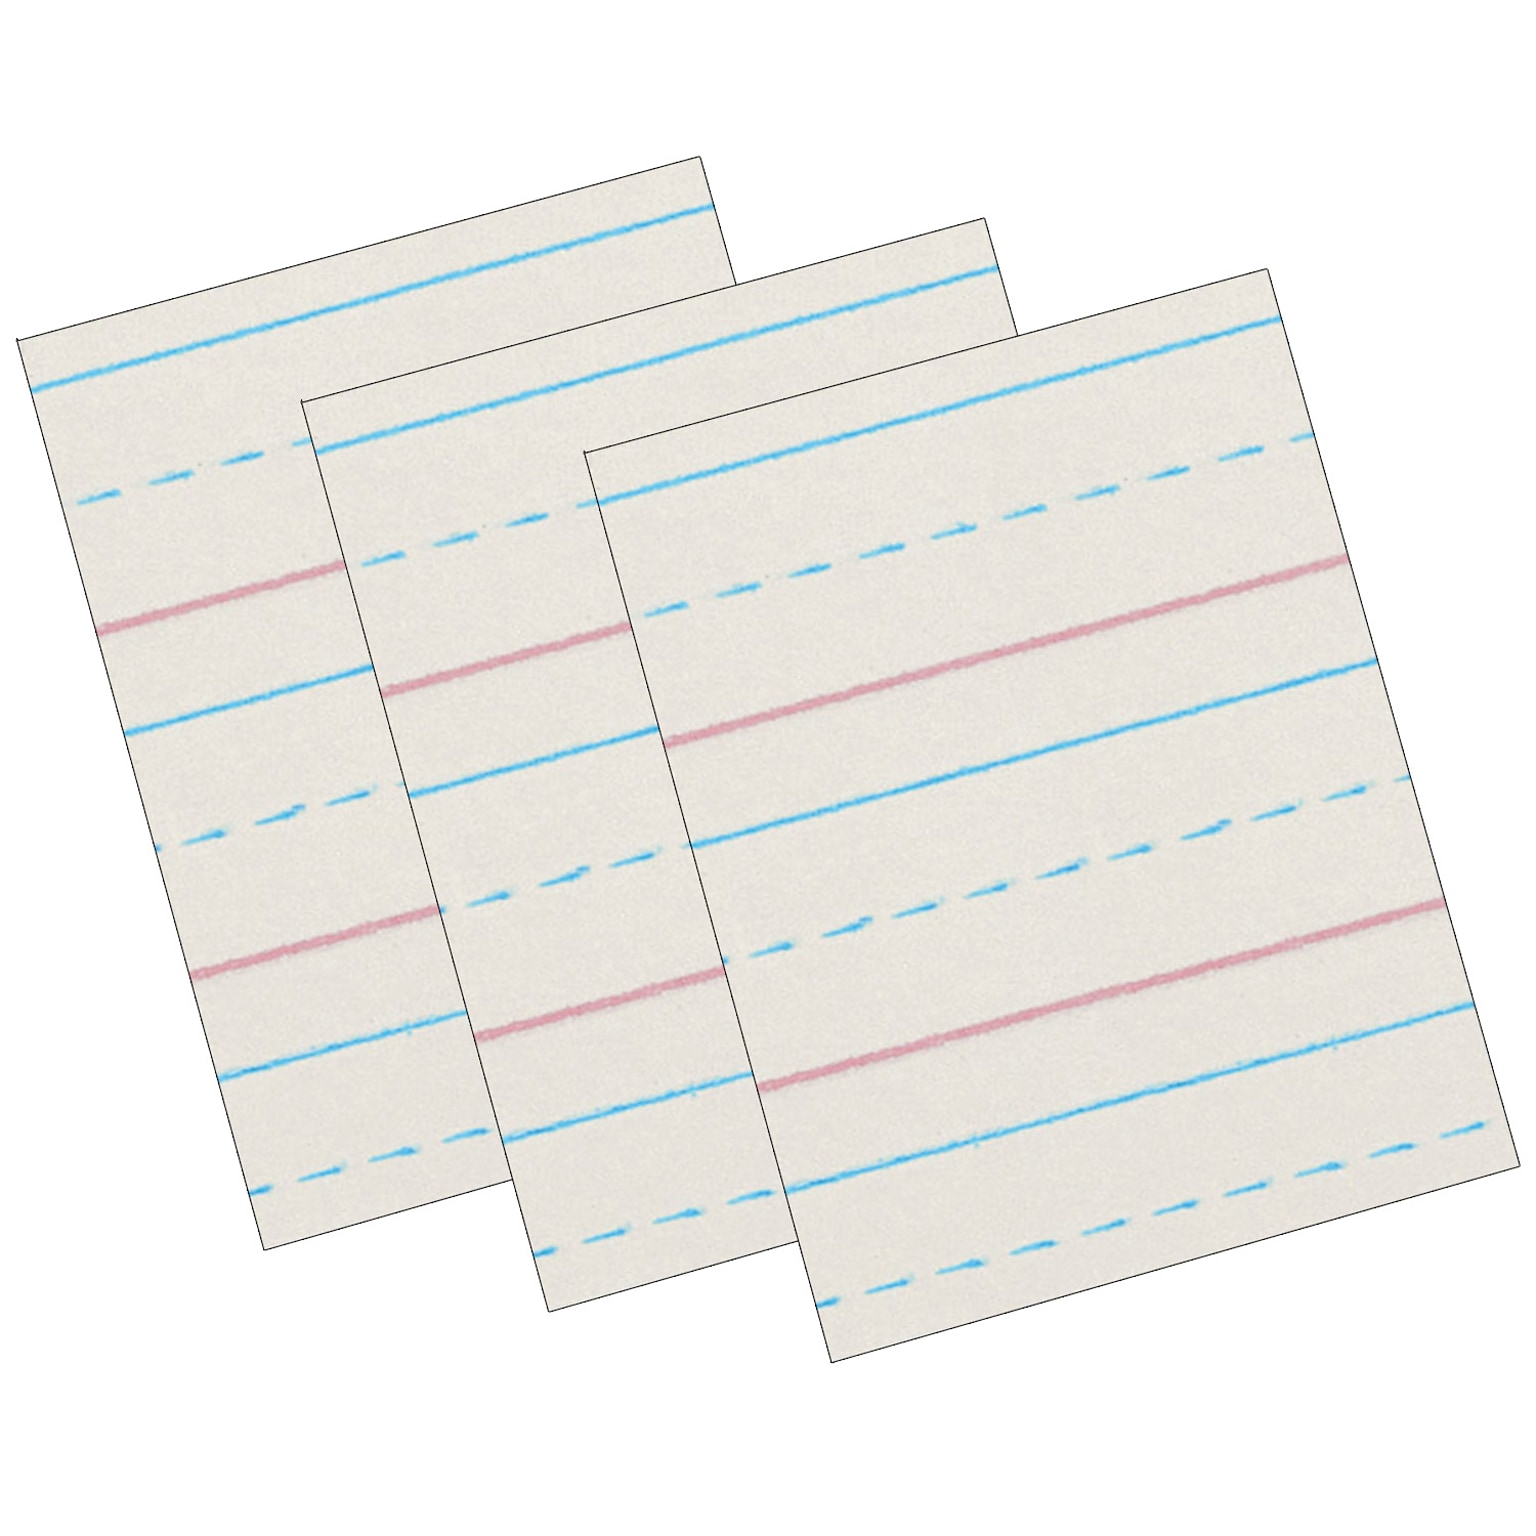 Zaner-Bloser 8 x 10.5 Newsprint Handwriting Paper, 1/2 x 1/4 x 1/4 Ruled, 500 Sheets/Pack, 3 Packs (PACZP2613-3)